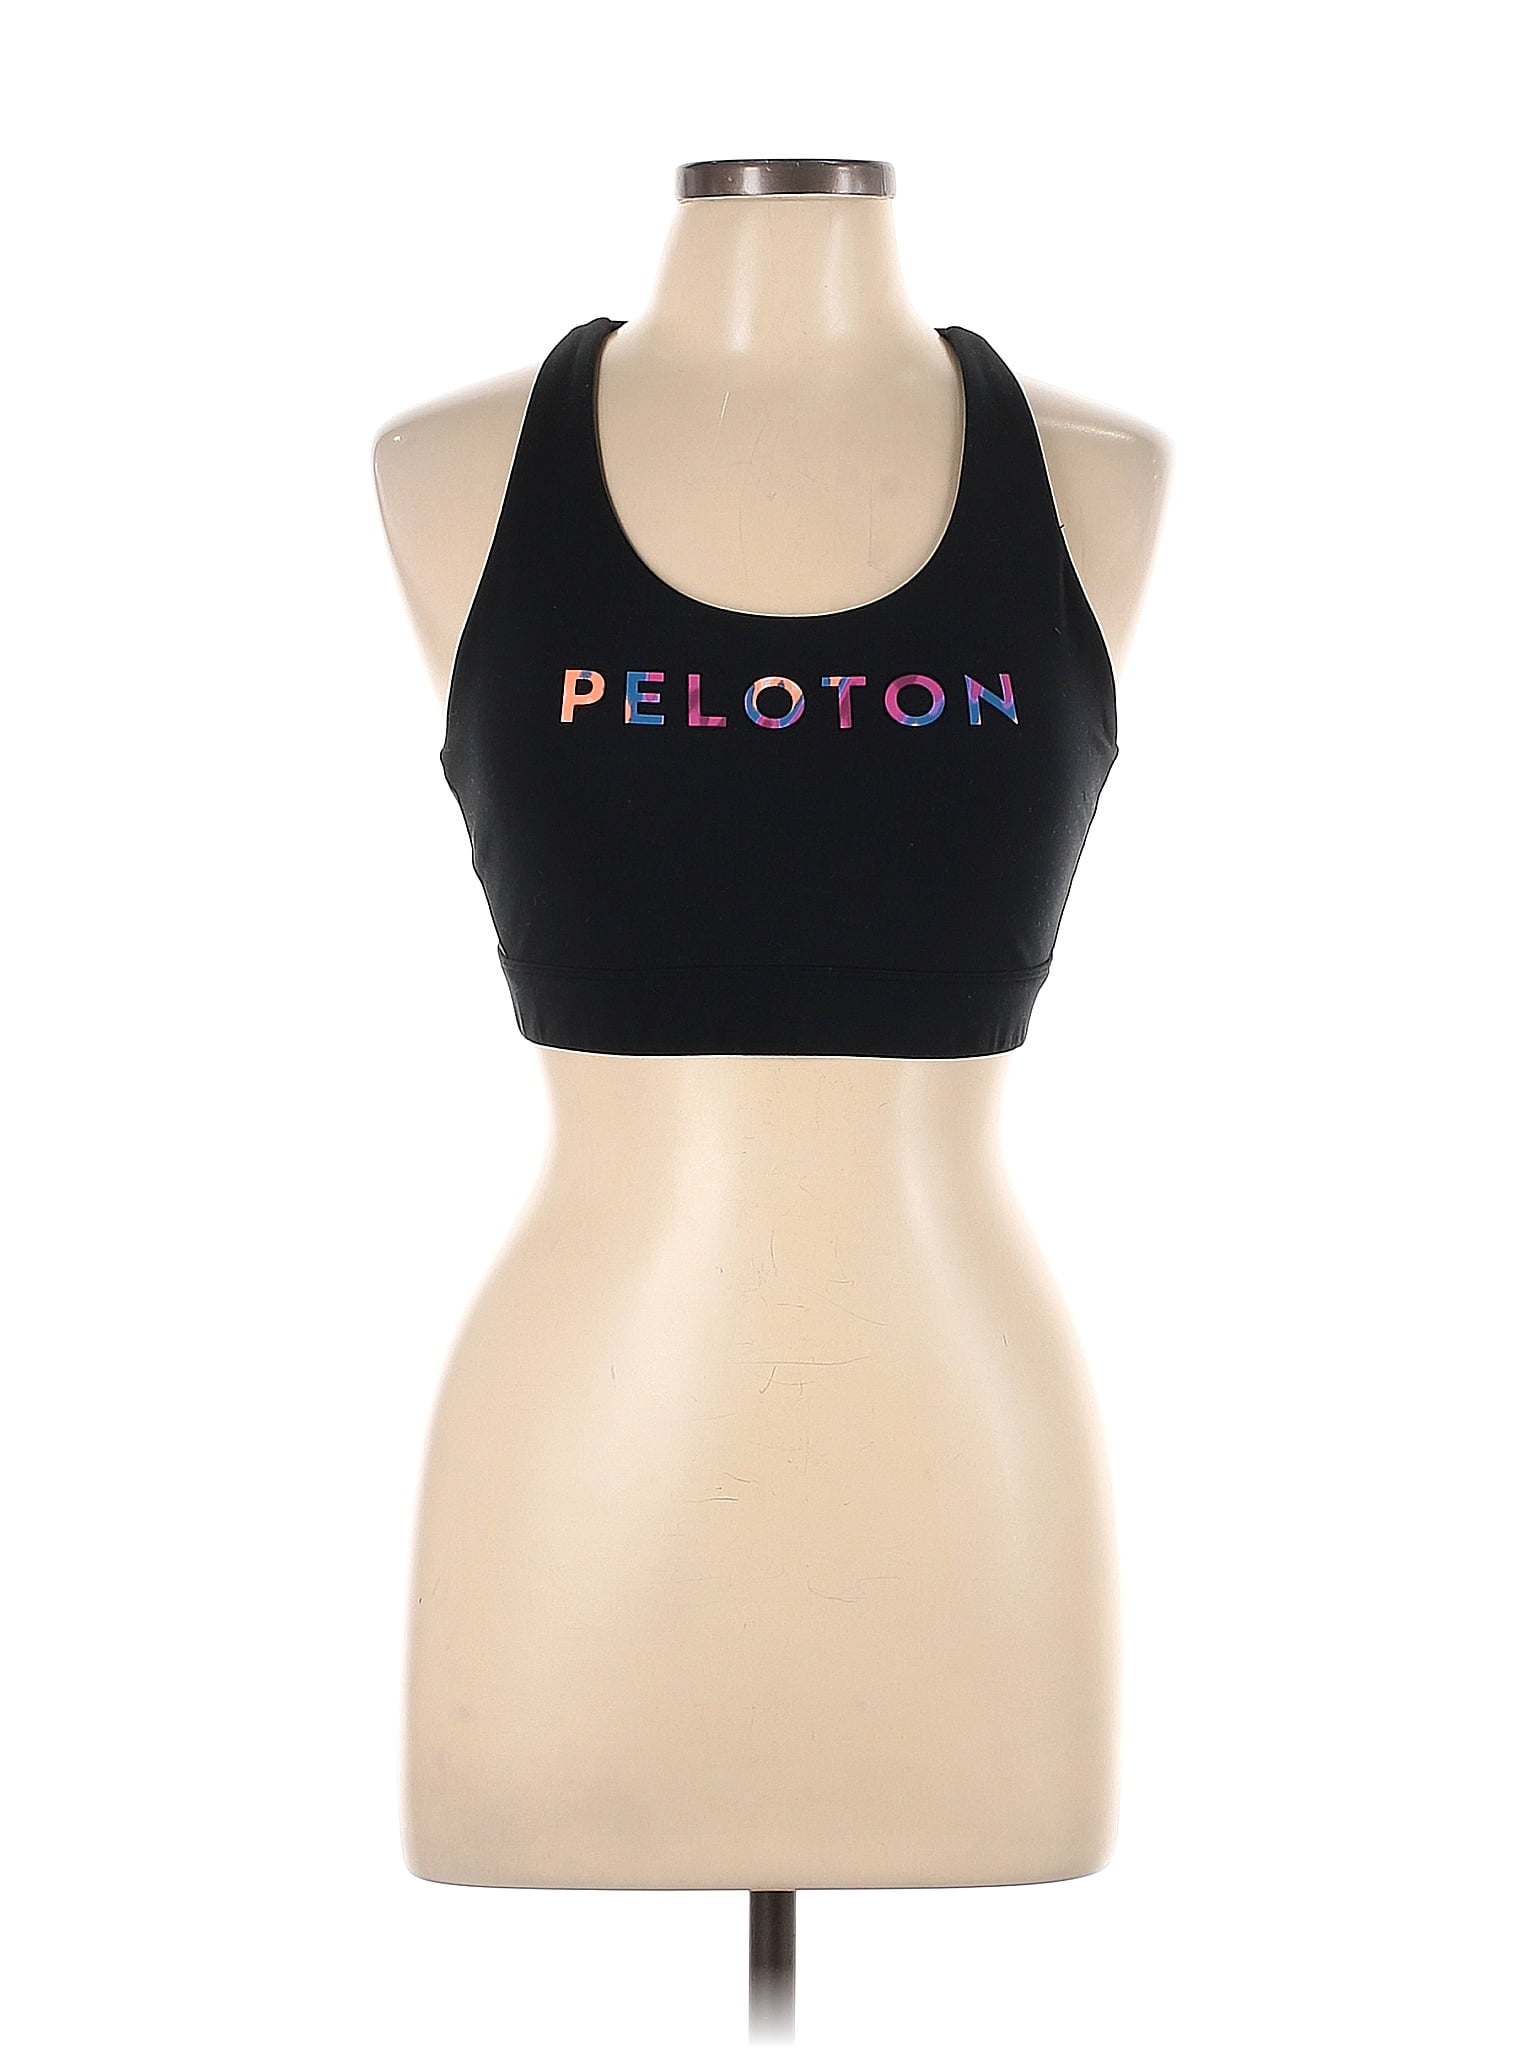 Peloton Graphic Black Sports Bra Size L - 57% off